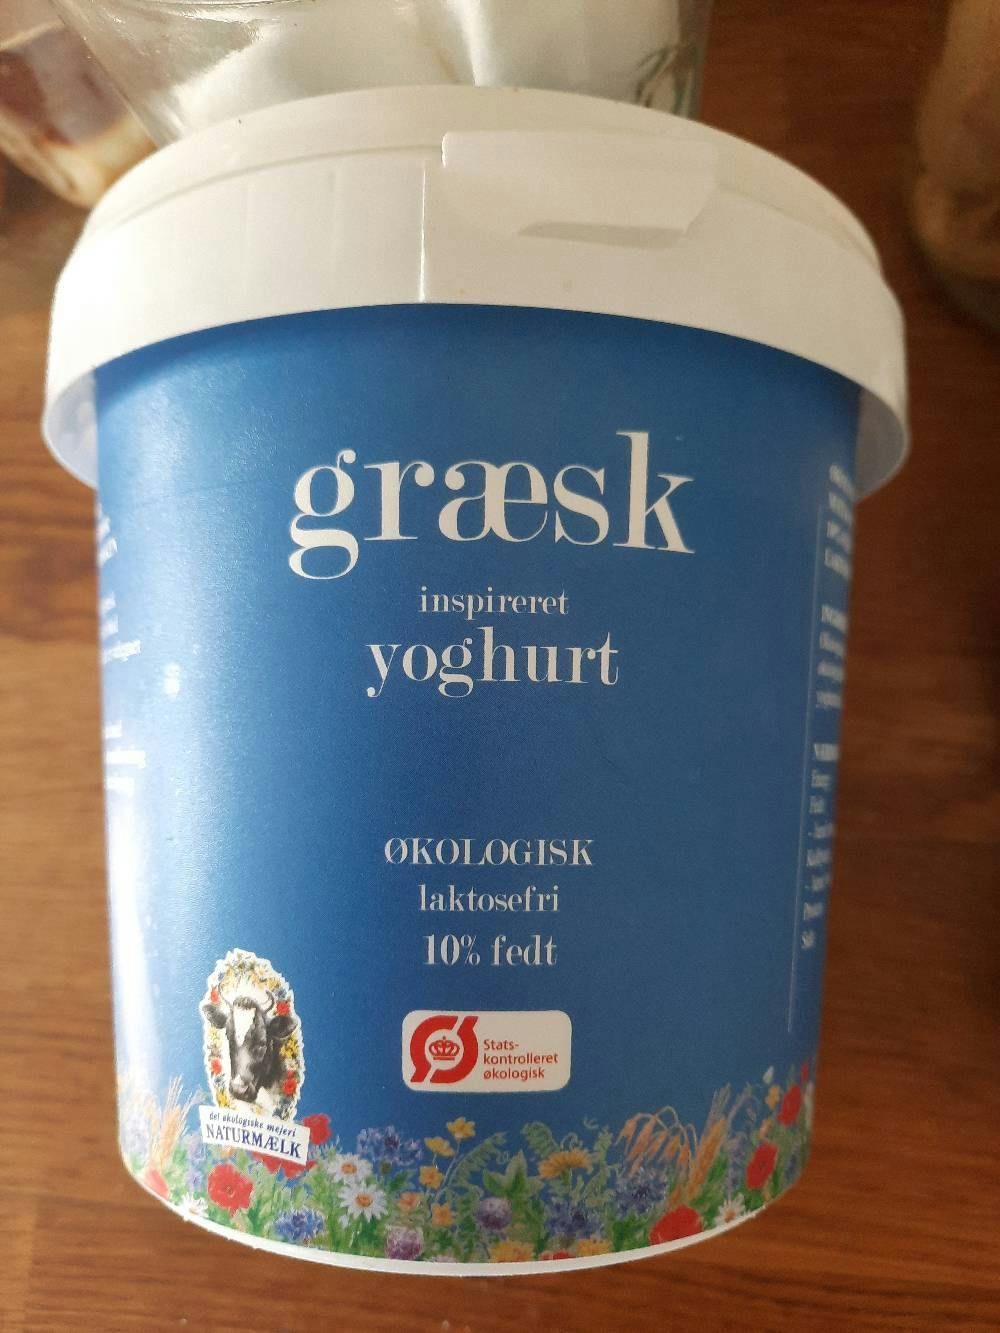 Græsk inspireret yoghurt, Naturmælk